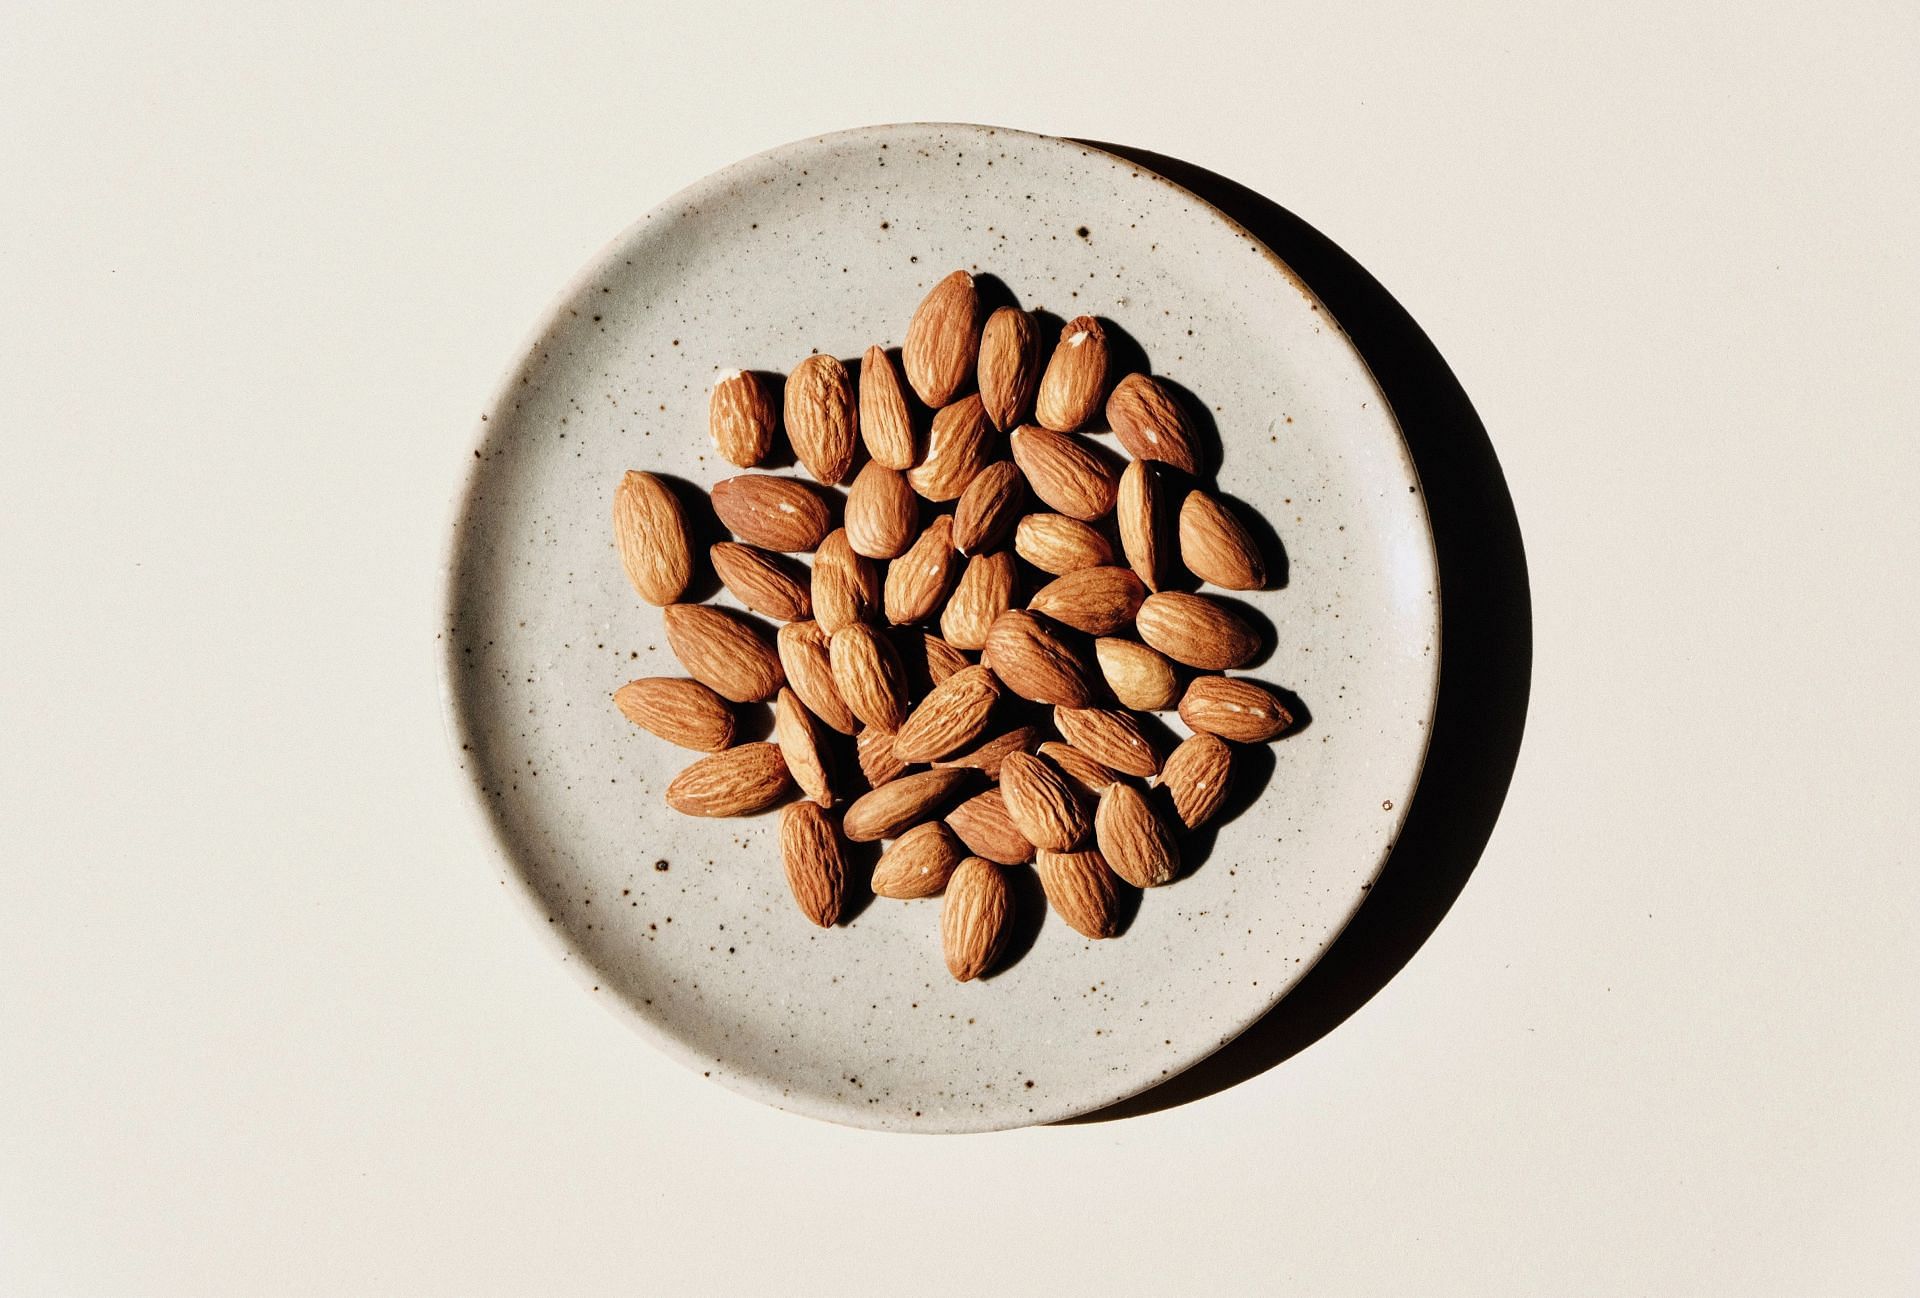 Soaked vs Unsoaked Almonds (Image via Unsplash/Jocelyn)